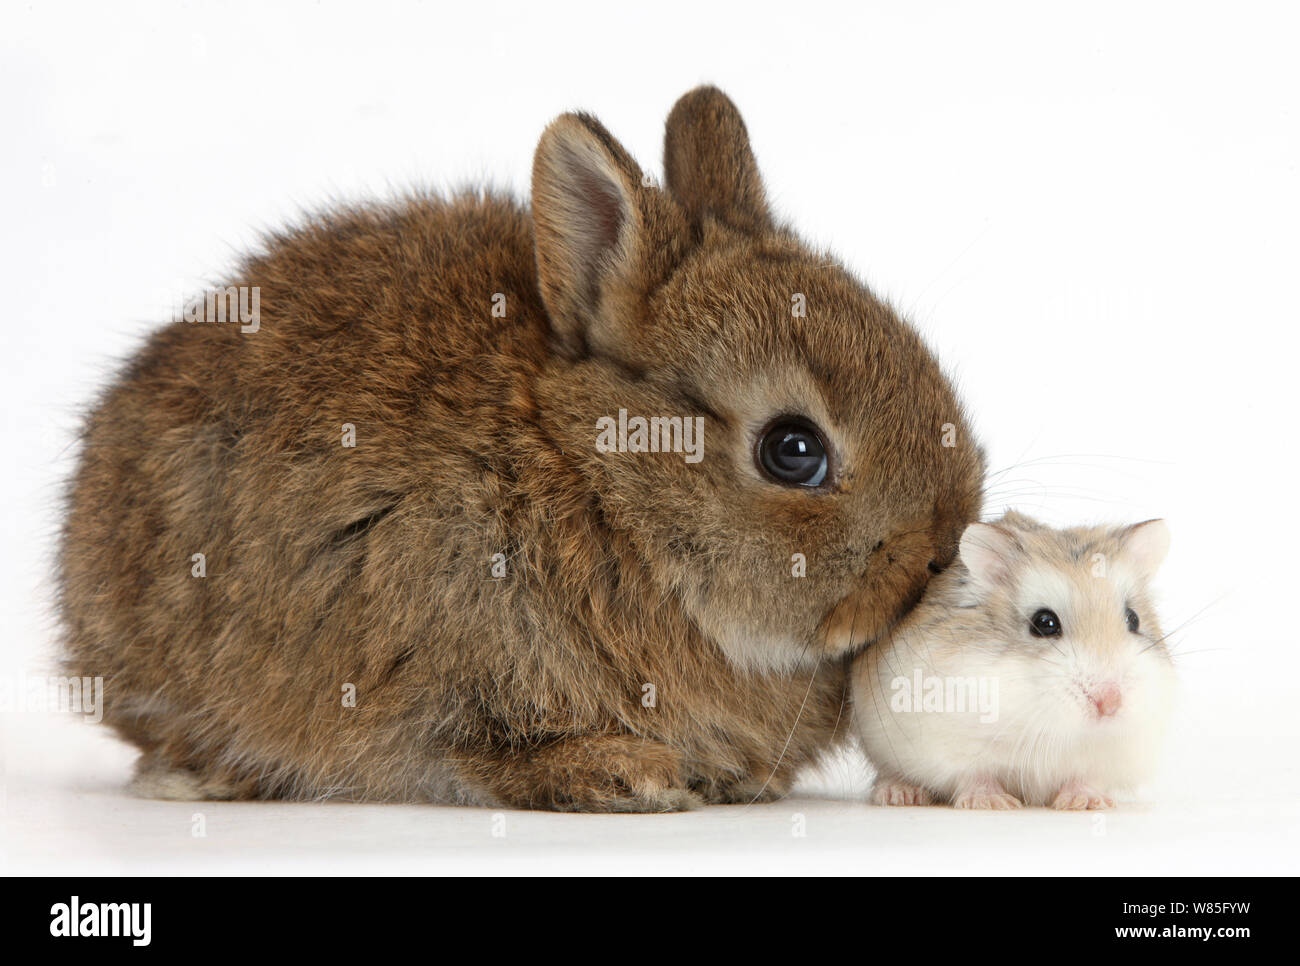 Bébé lapin Nain Néerlandais avec un hamster Roborovski (Phodopus roborovskii). Banque D'Images